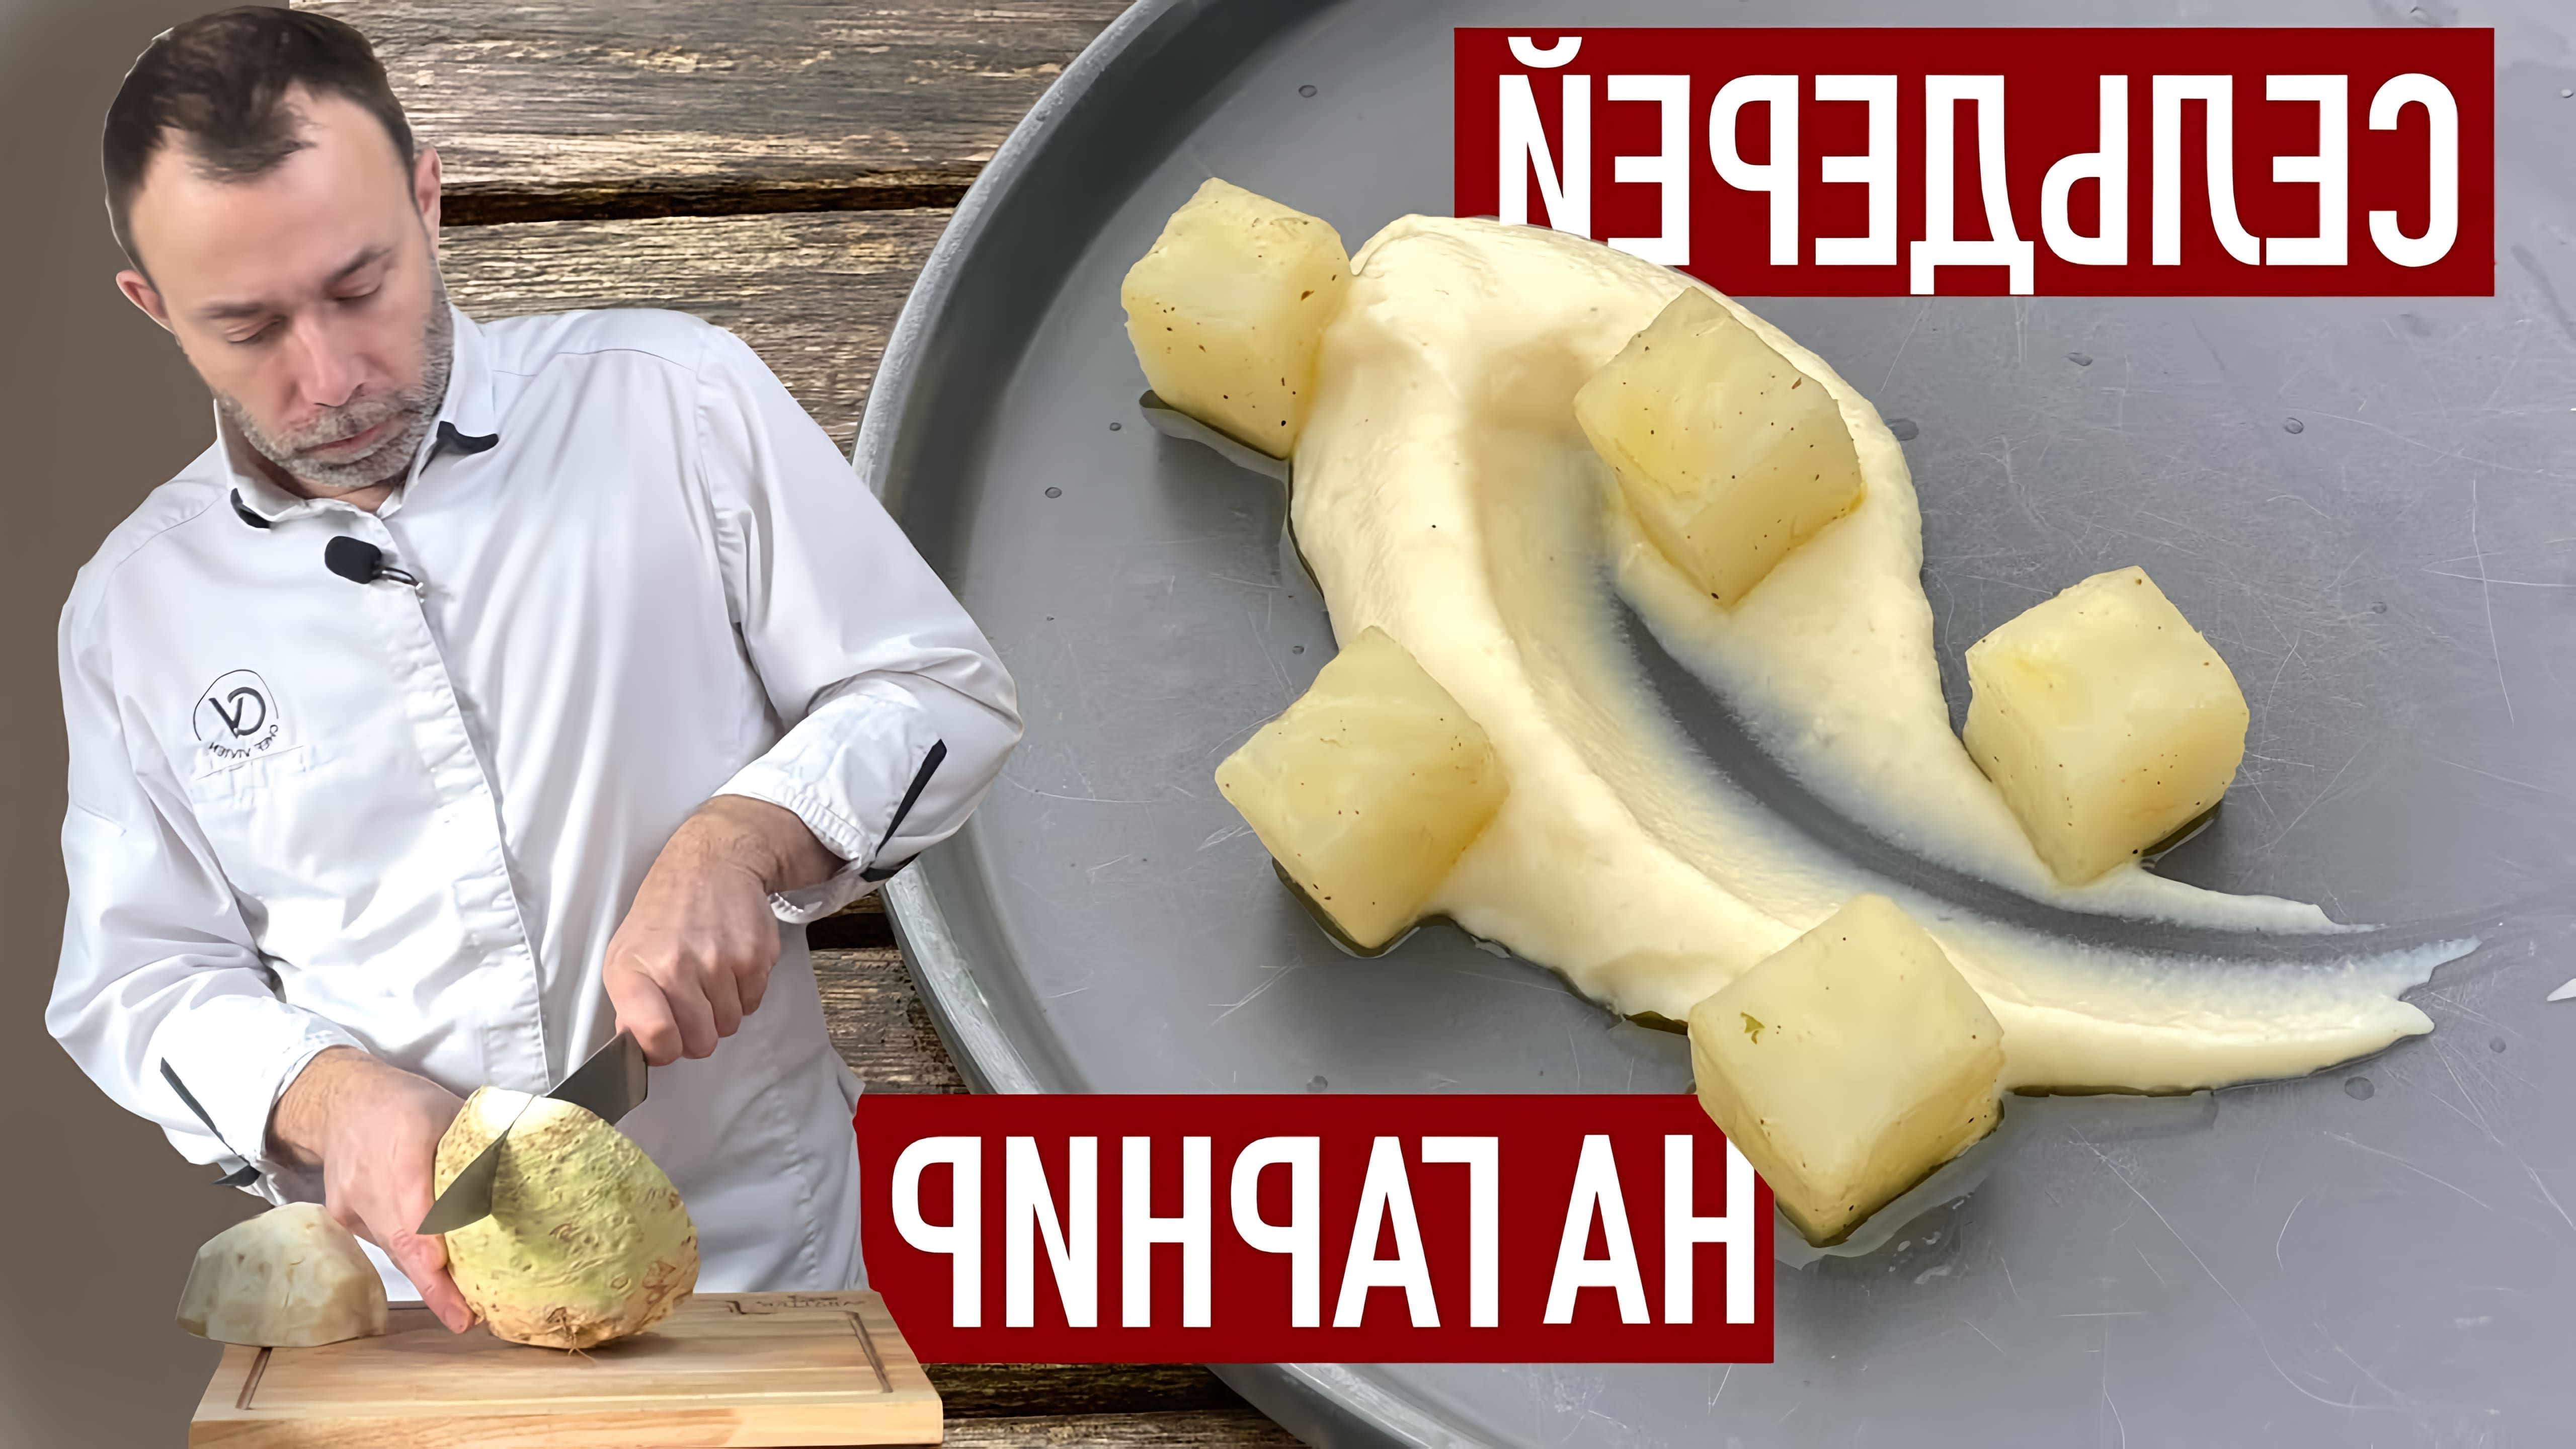 В этом видео шеф-повар показывает два рецепта приготовления гарниров из корня сельдерея